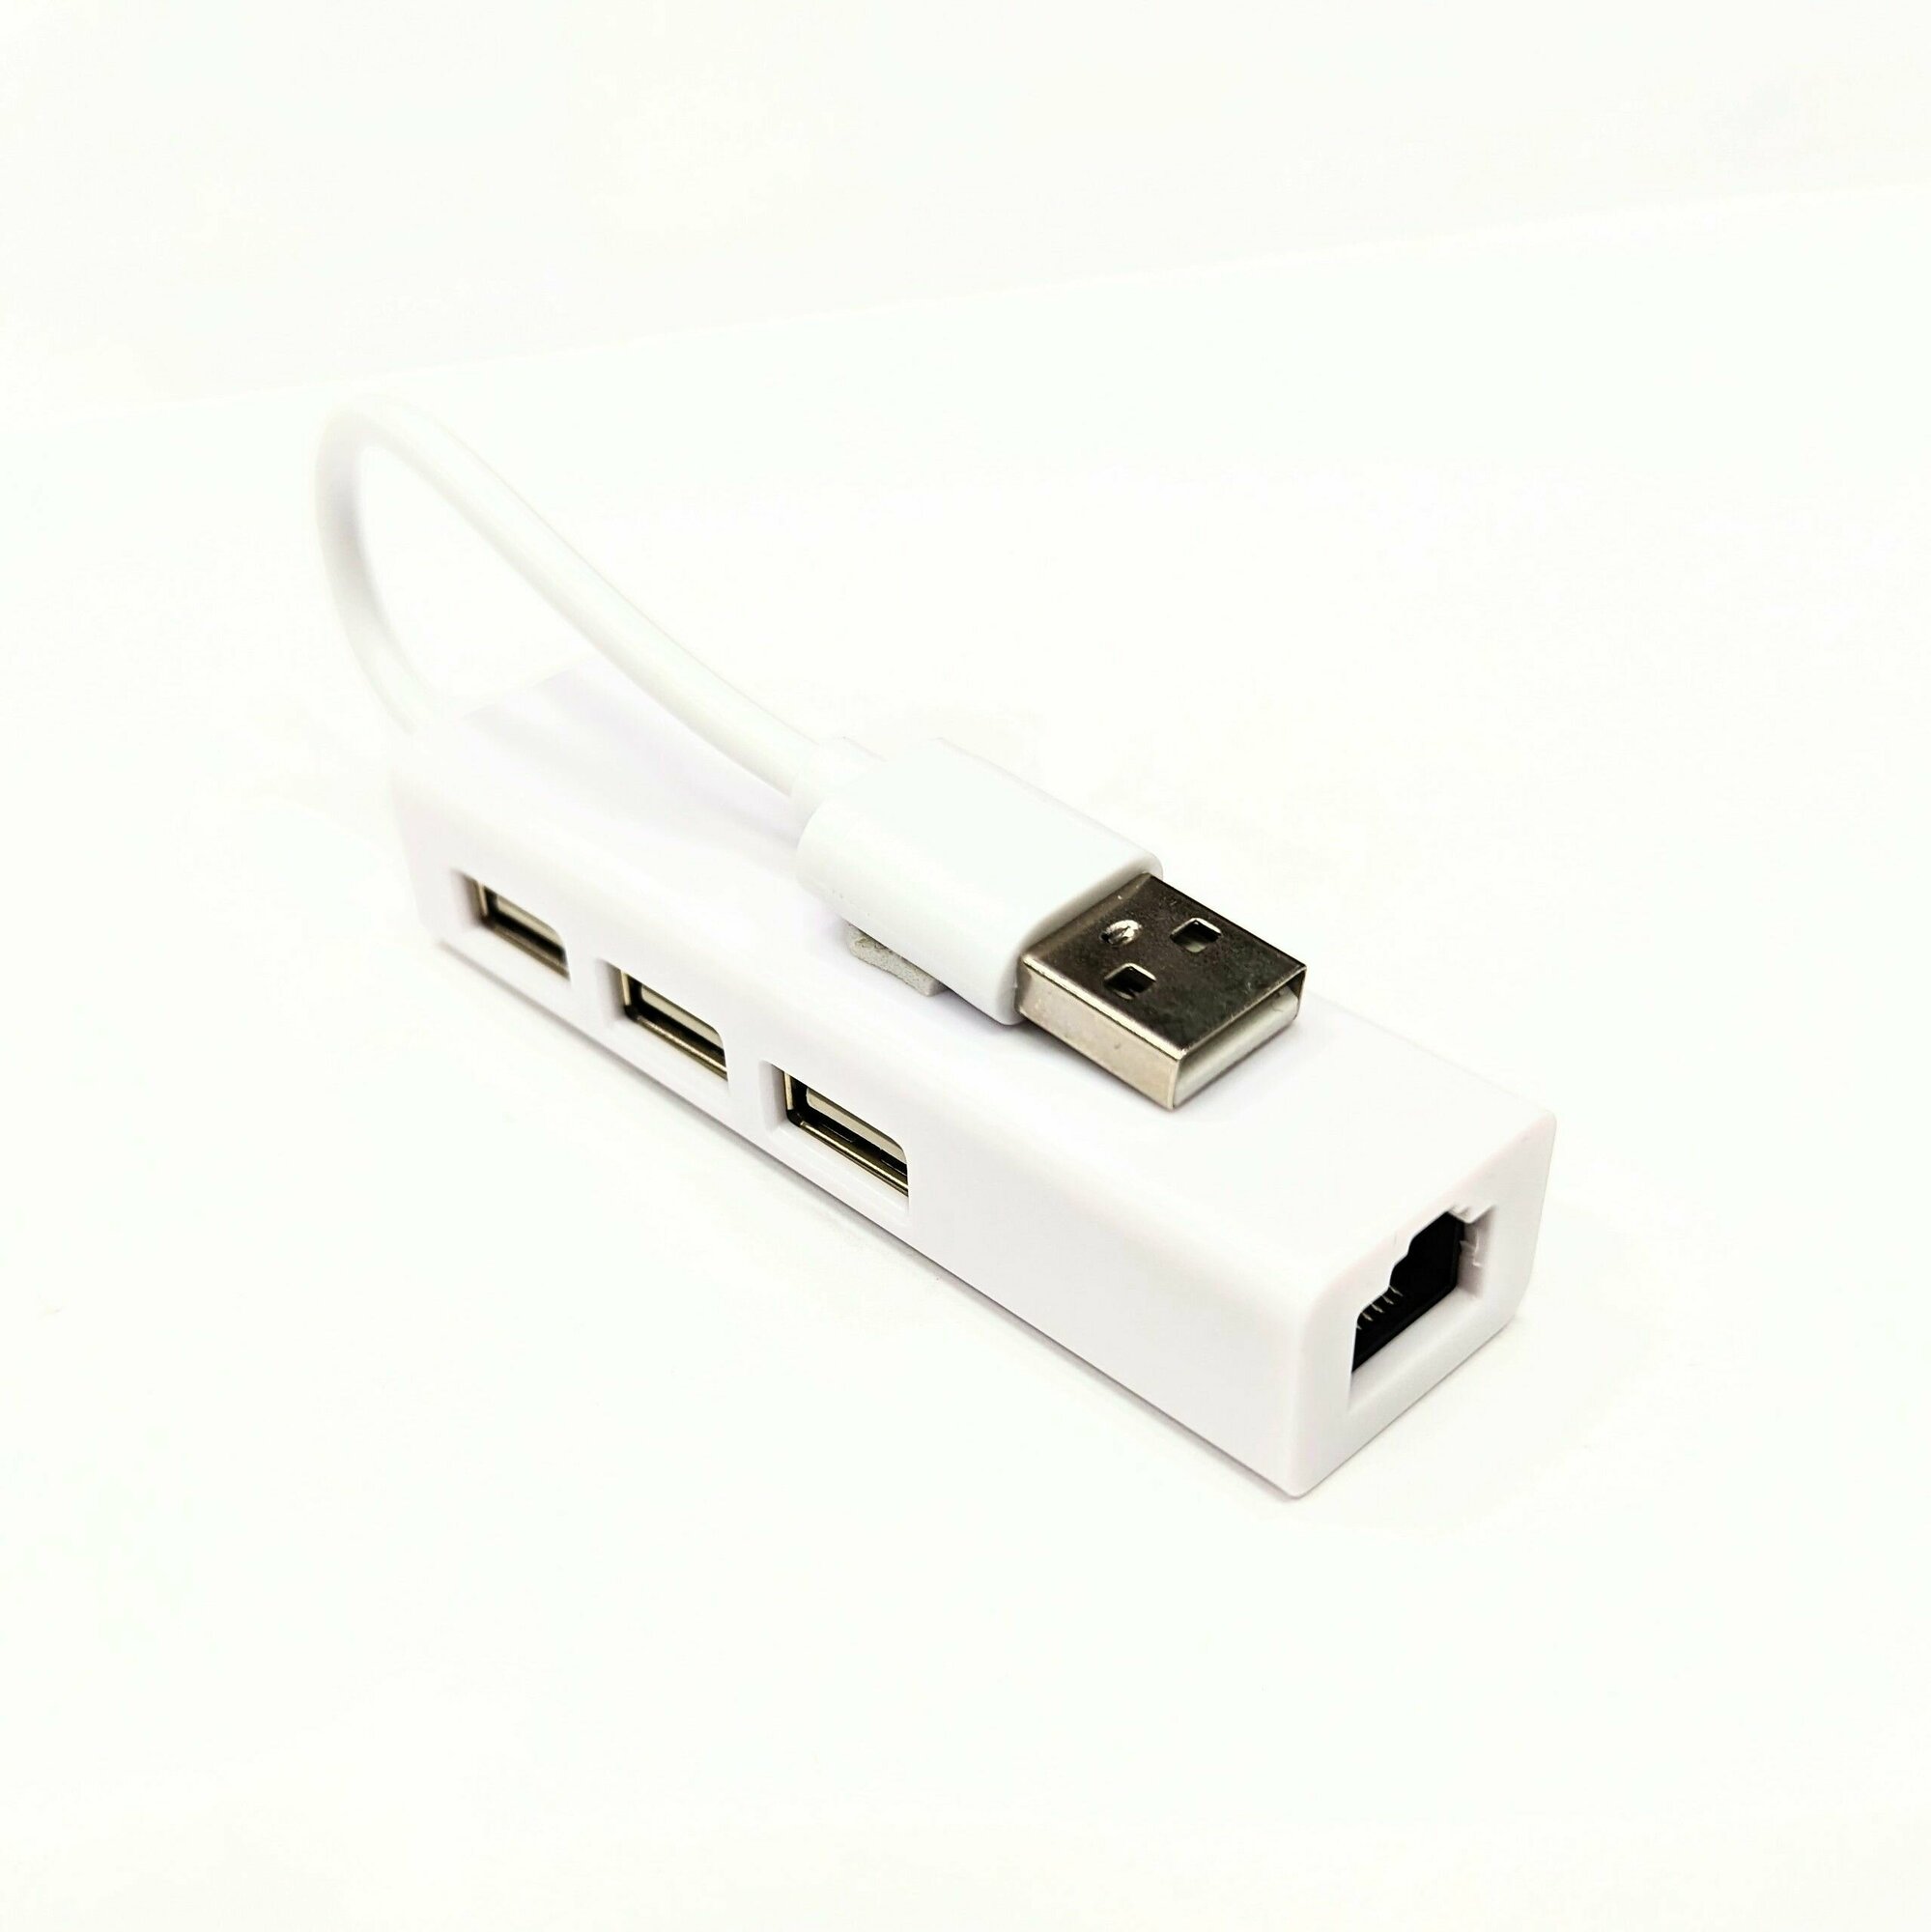 USBHUB "4 в 1" Ethernet 3 x USB 2.0 + RJ45 переходник LAN Интернет белый